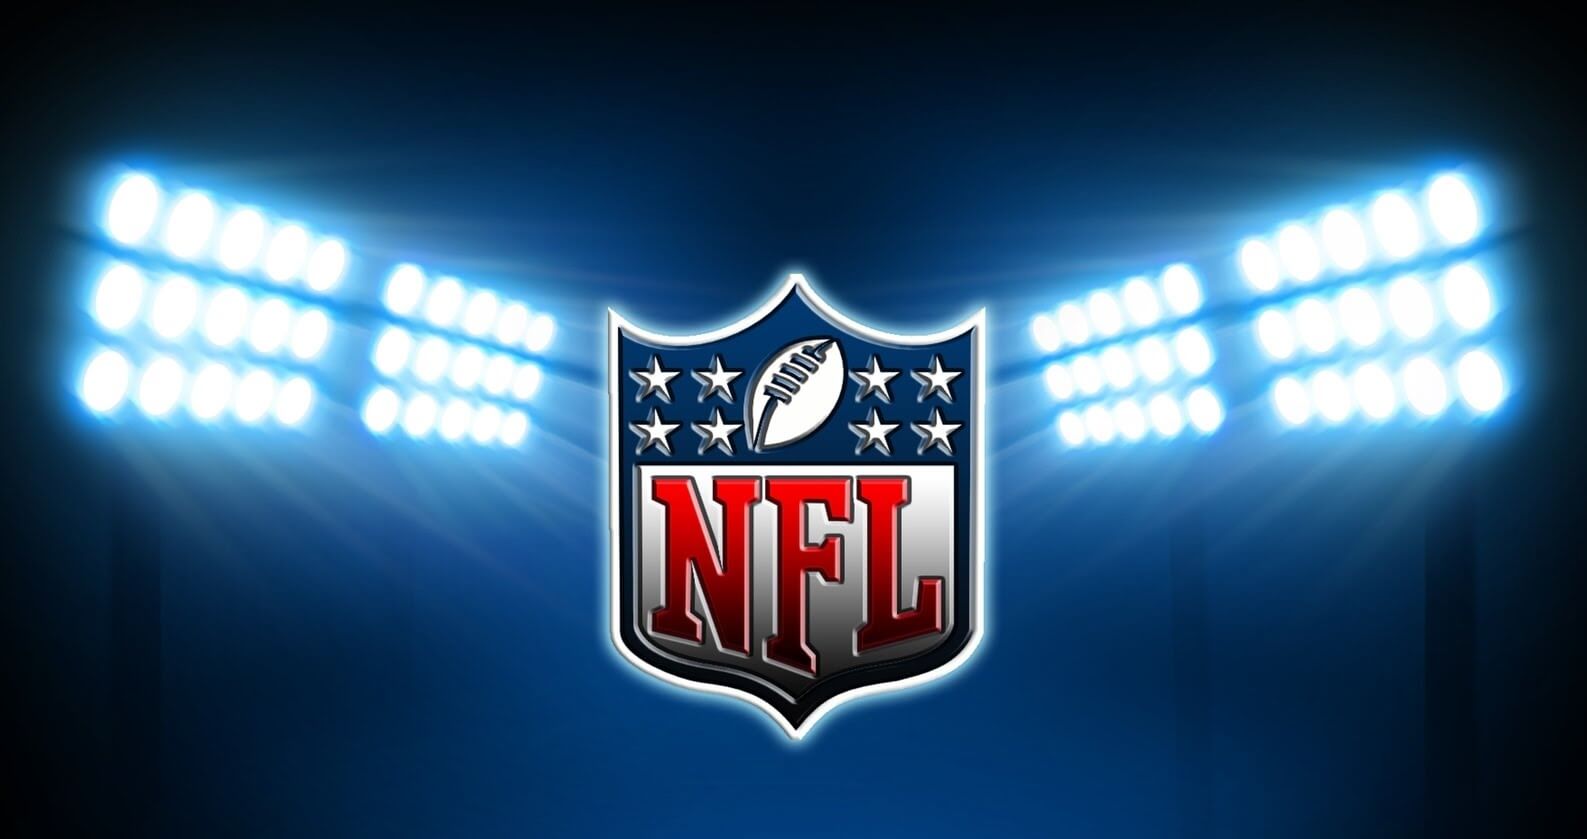 Tech giants considering bid for NFL's Thursday Night Football